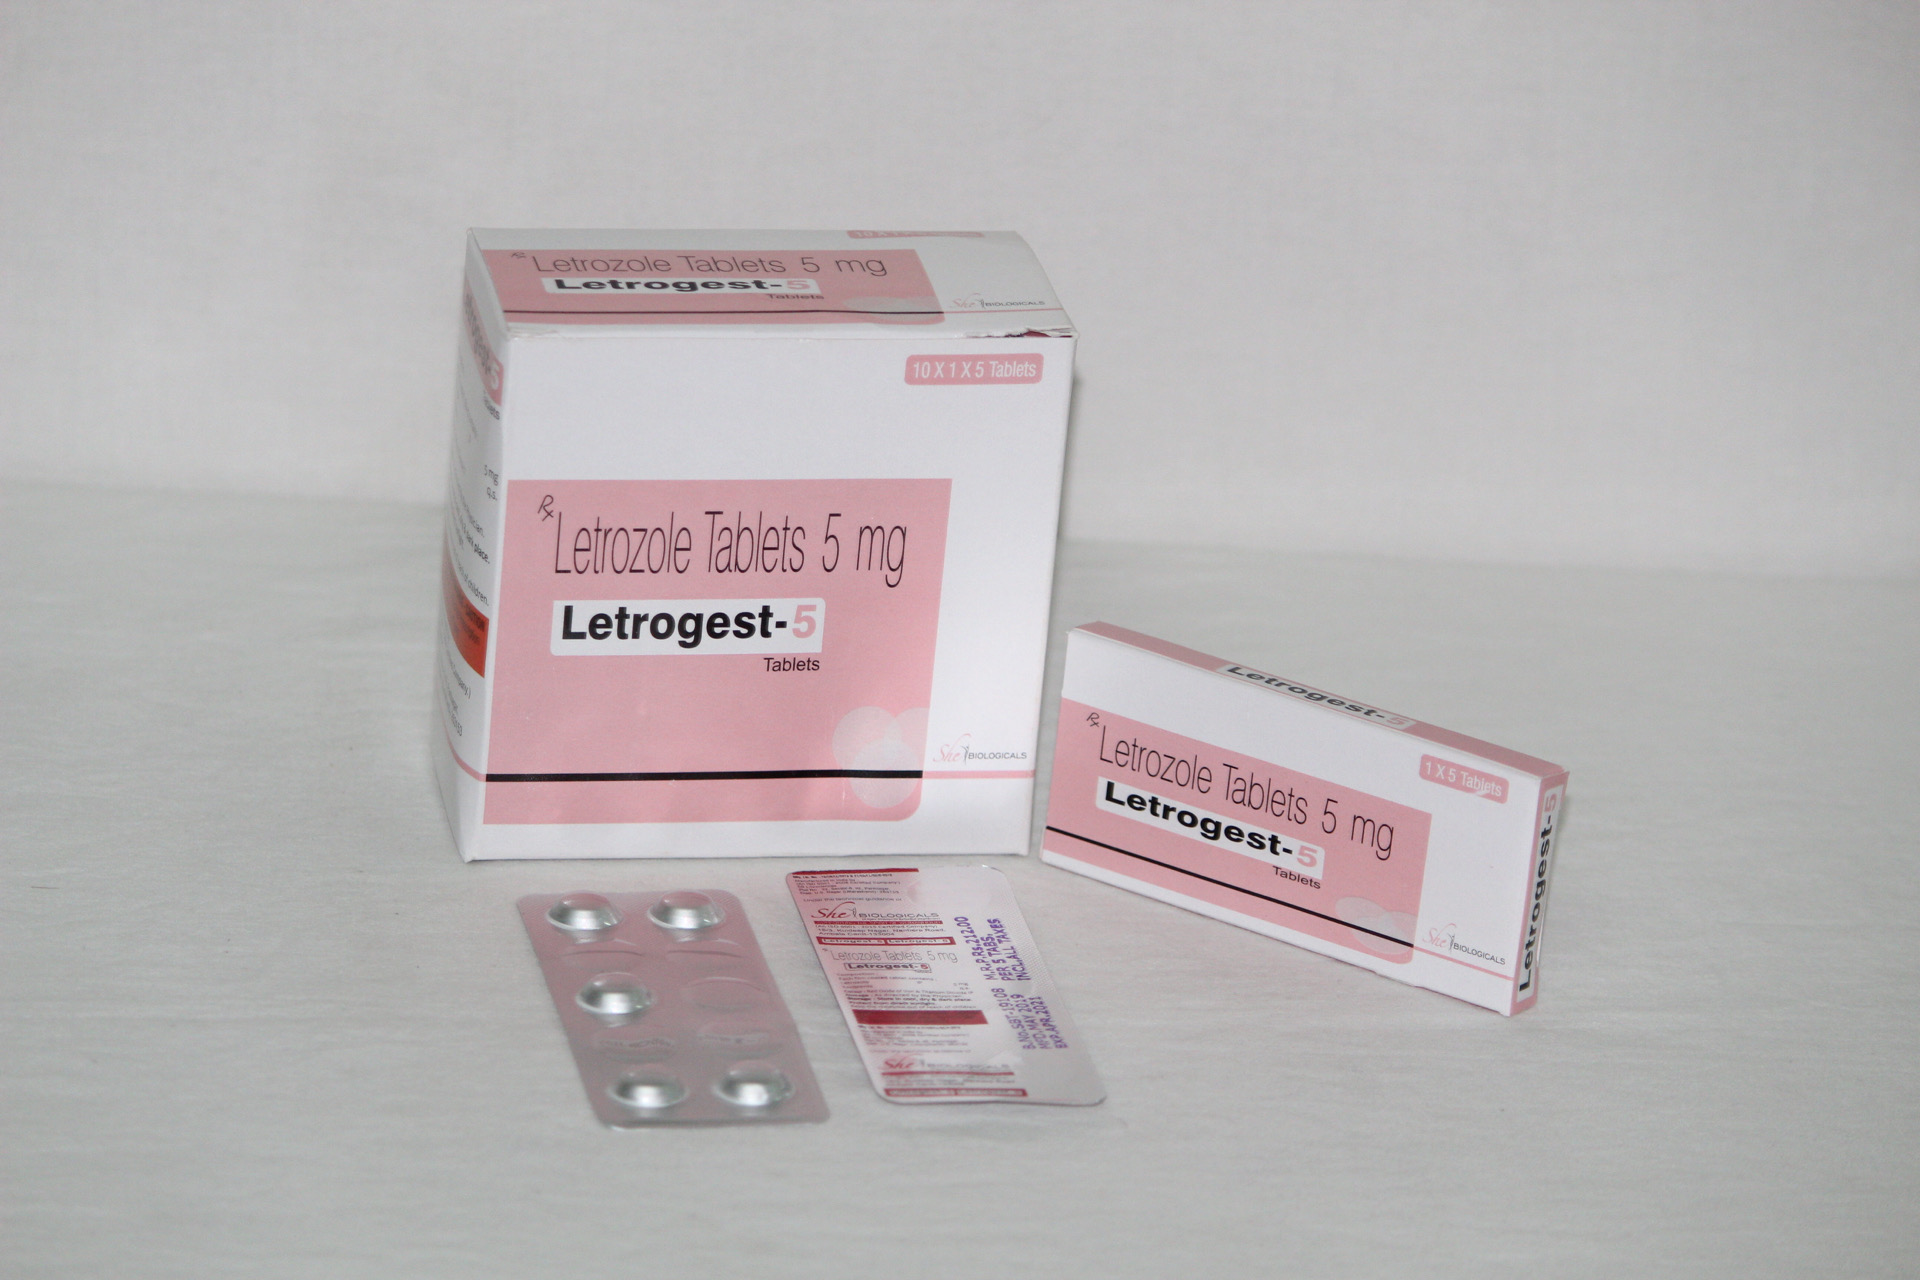 LETROGEST-5 (Letrozole 5 mg)